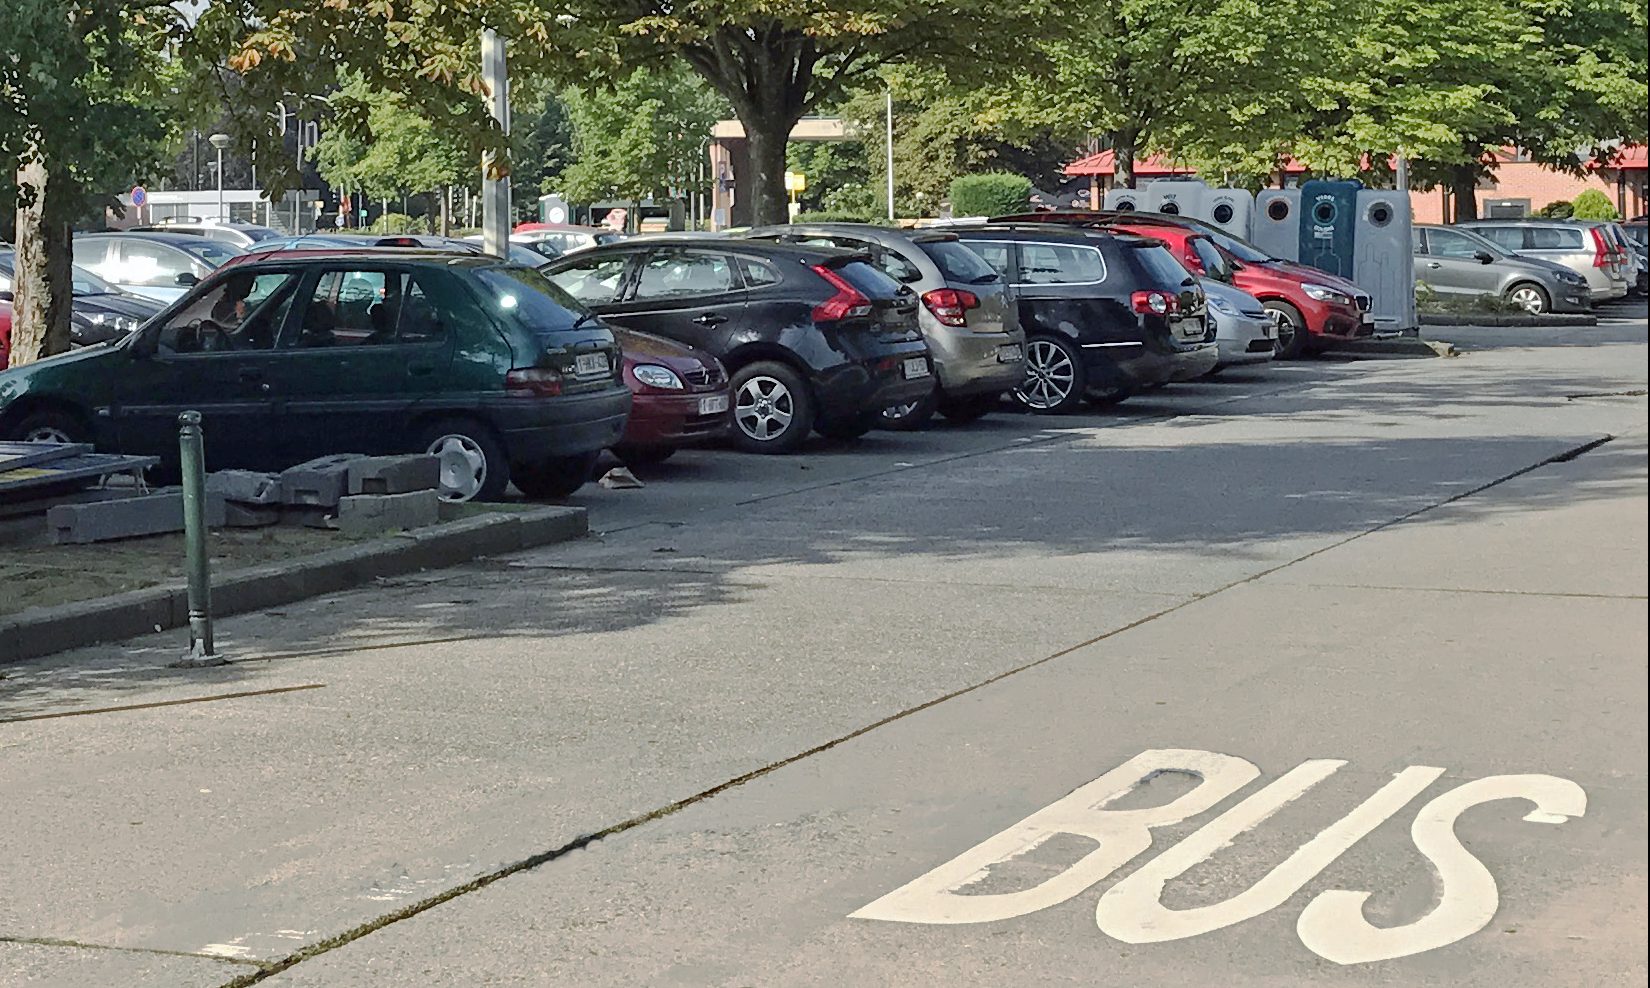 Louer ou stationner son vélo dans les parkings Q-Park